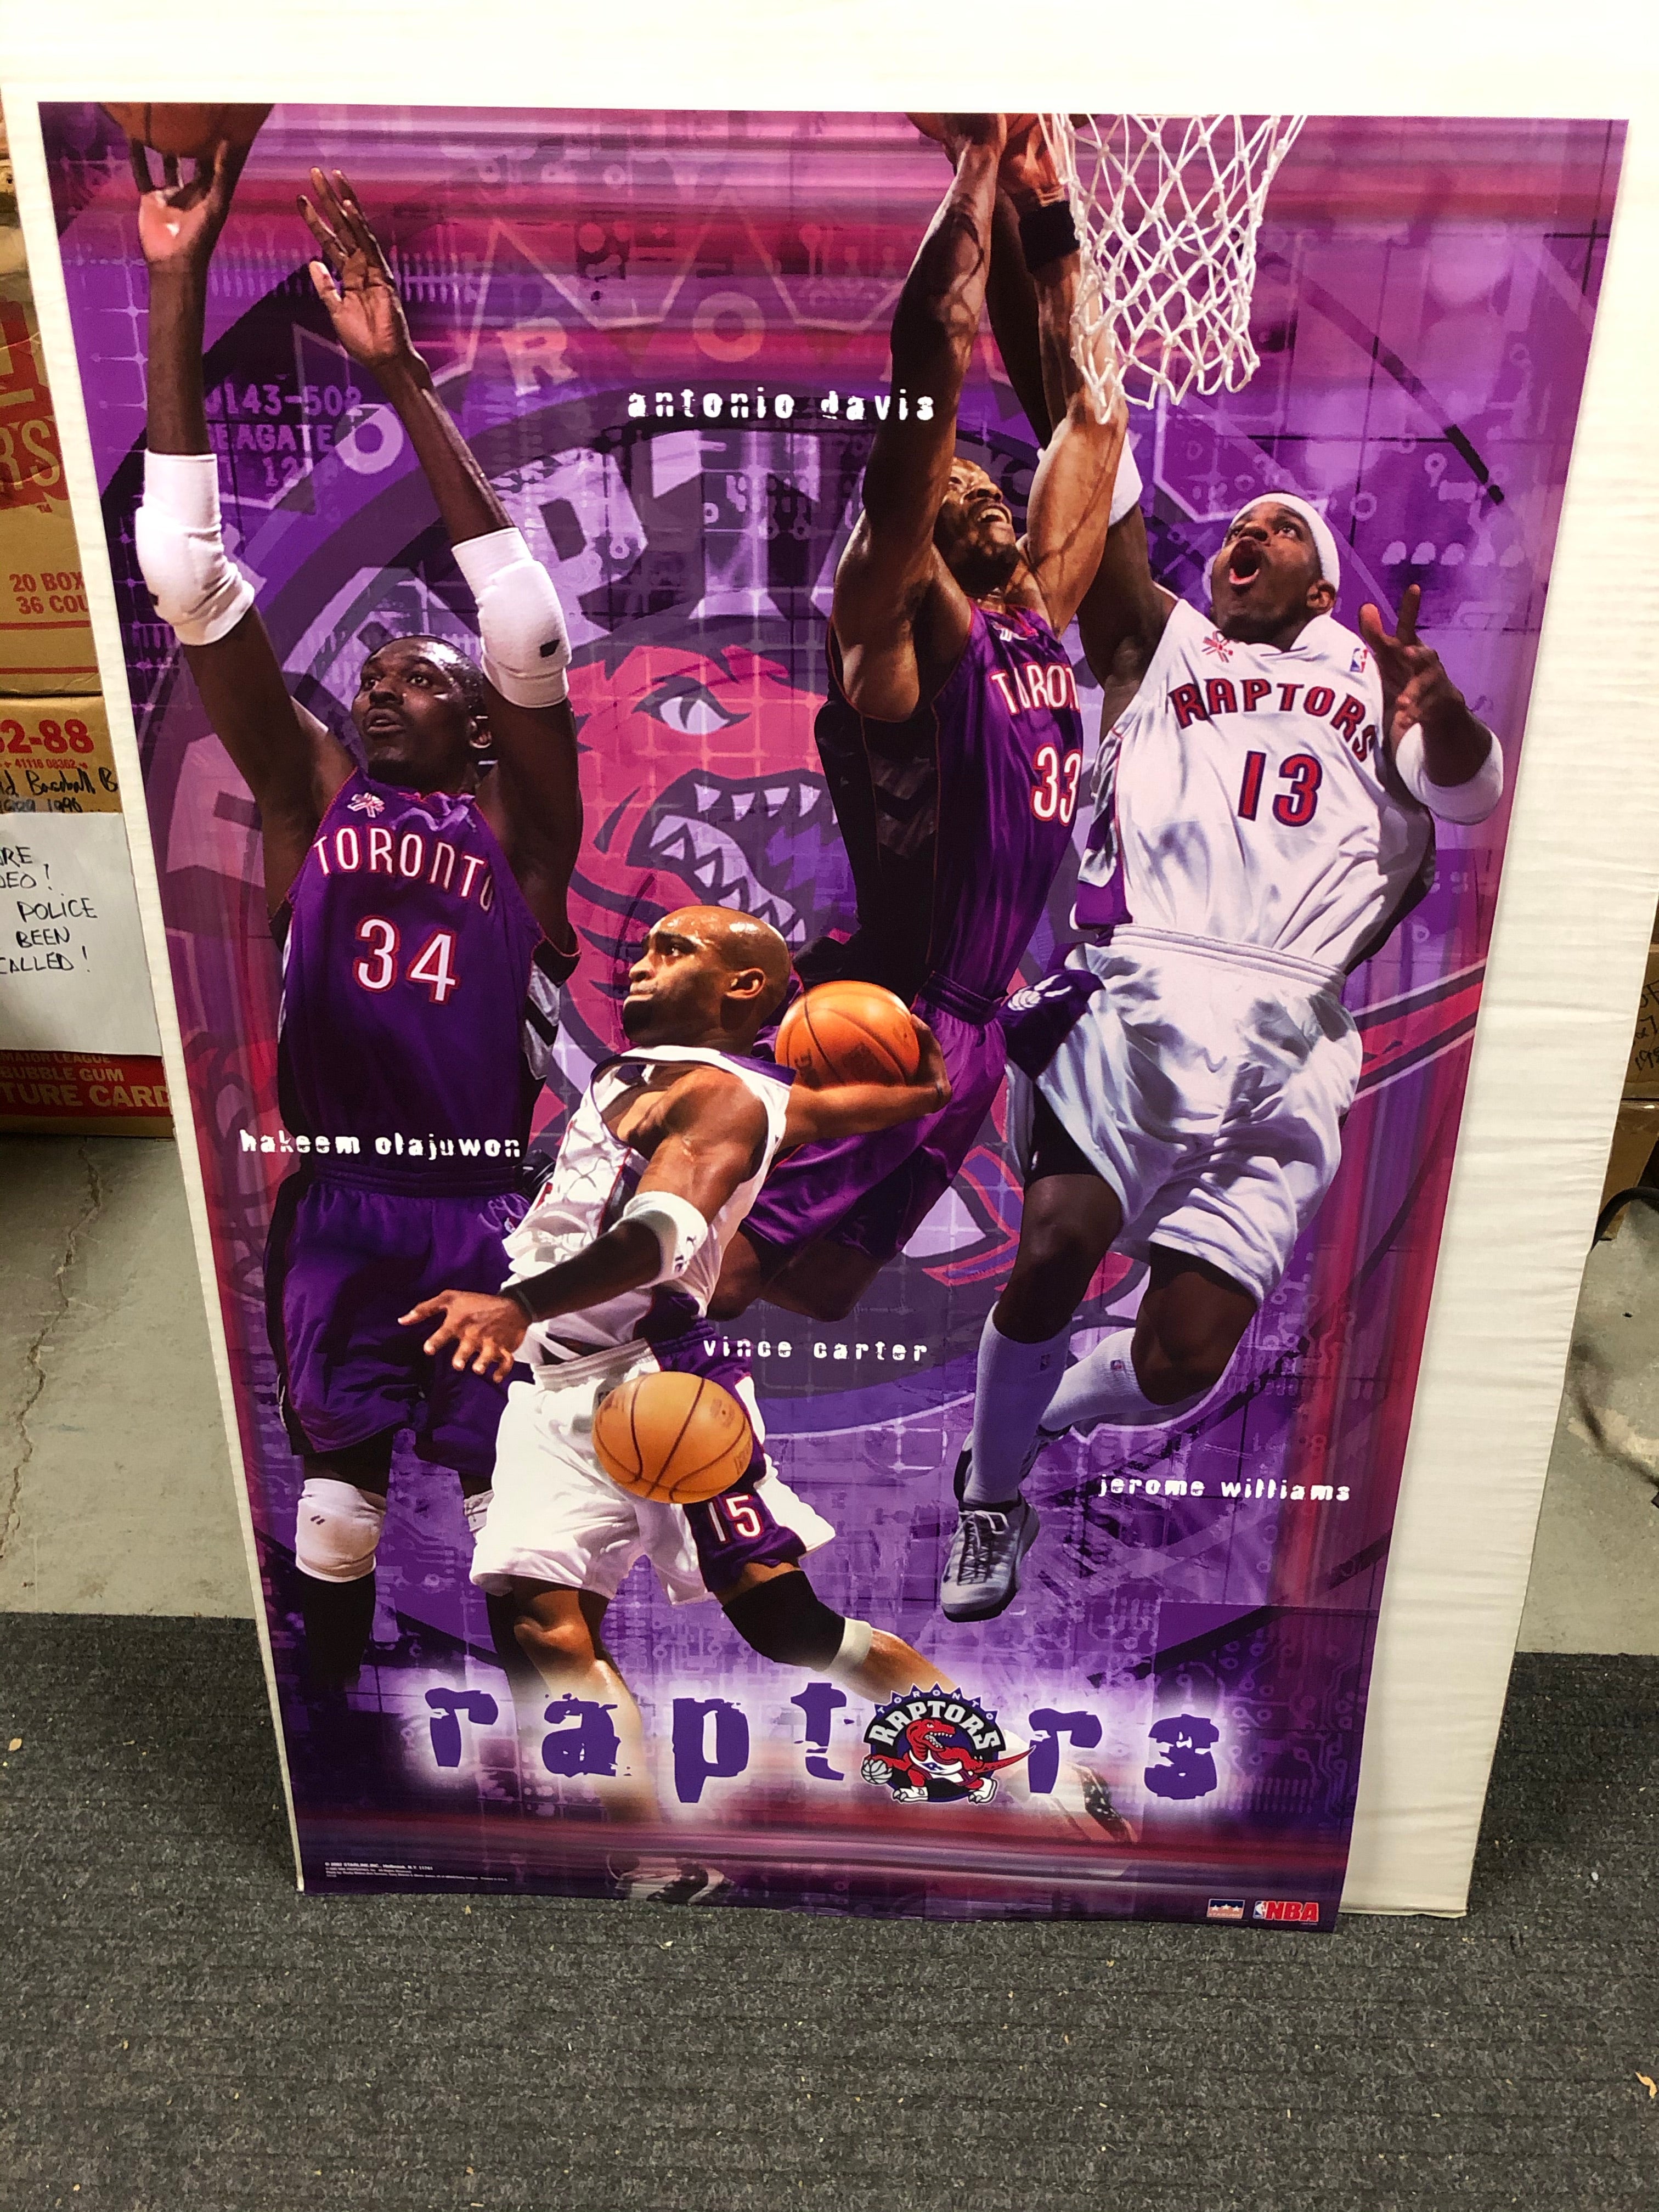 Toronto Raptors basketball rare original vintage basketball poster early 2000s